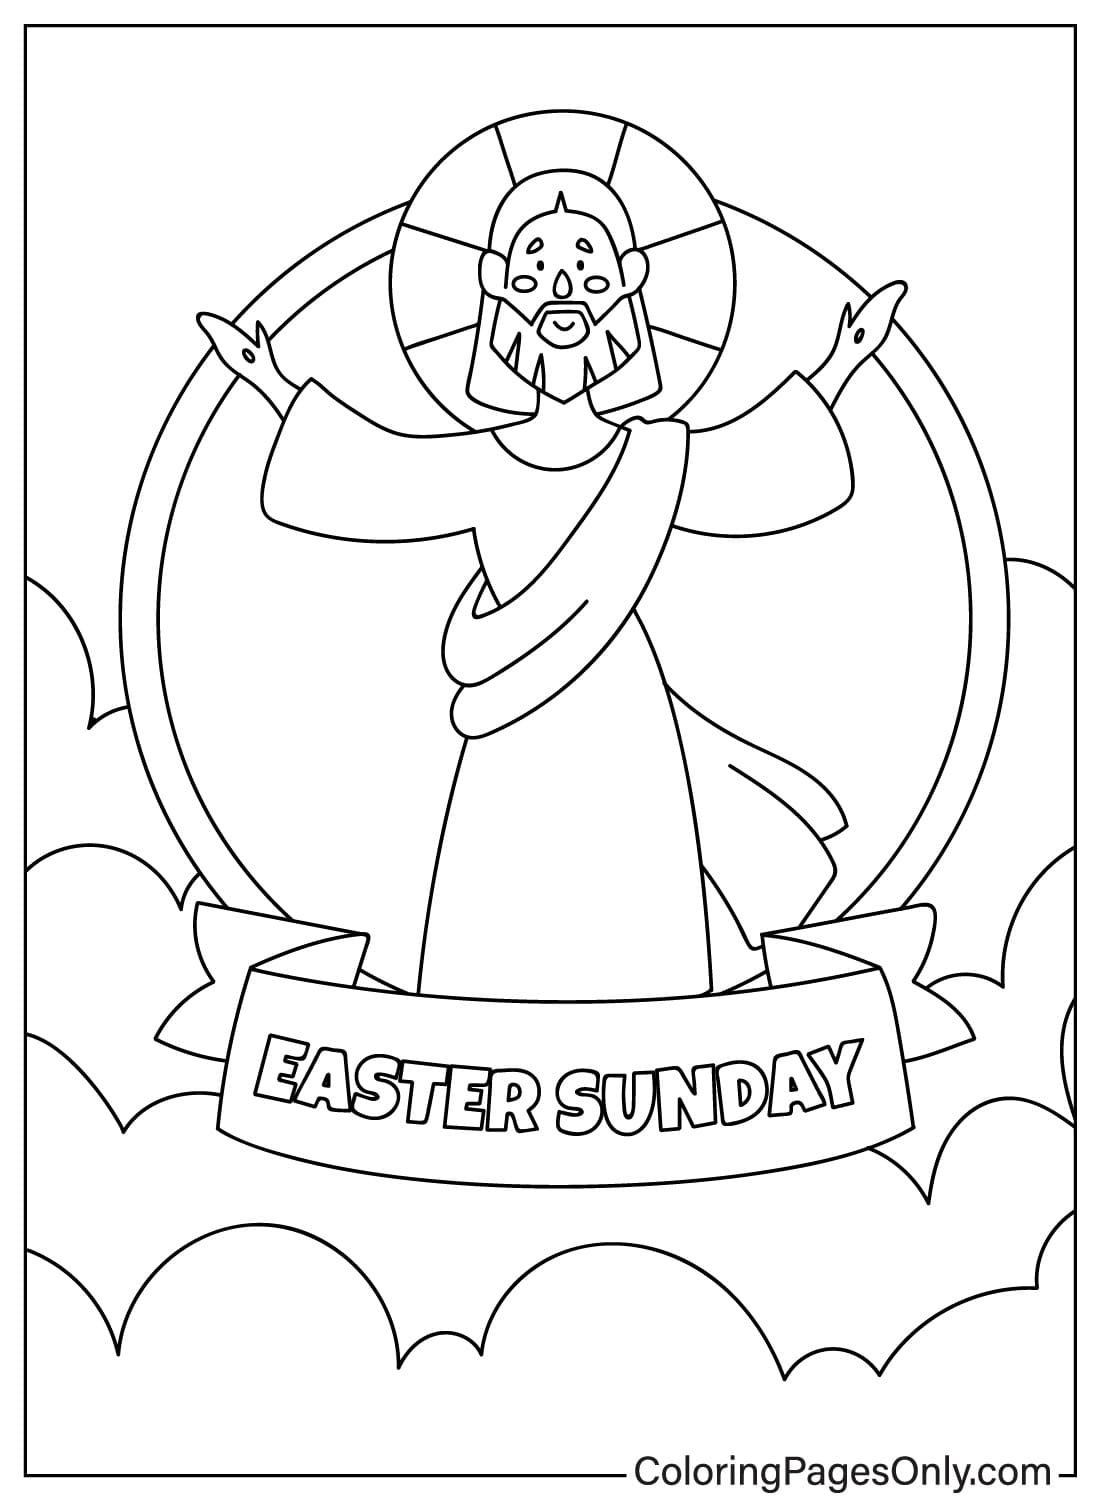 Gesù è risorto, foglio da colorare della domenica di Pasqua dalla Pasqua religiosa